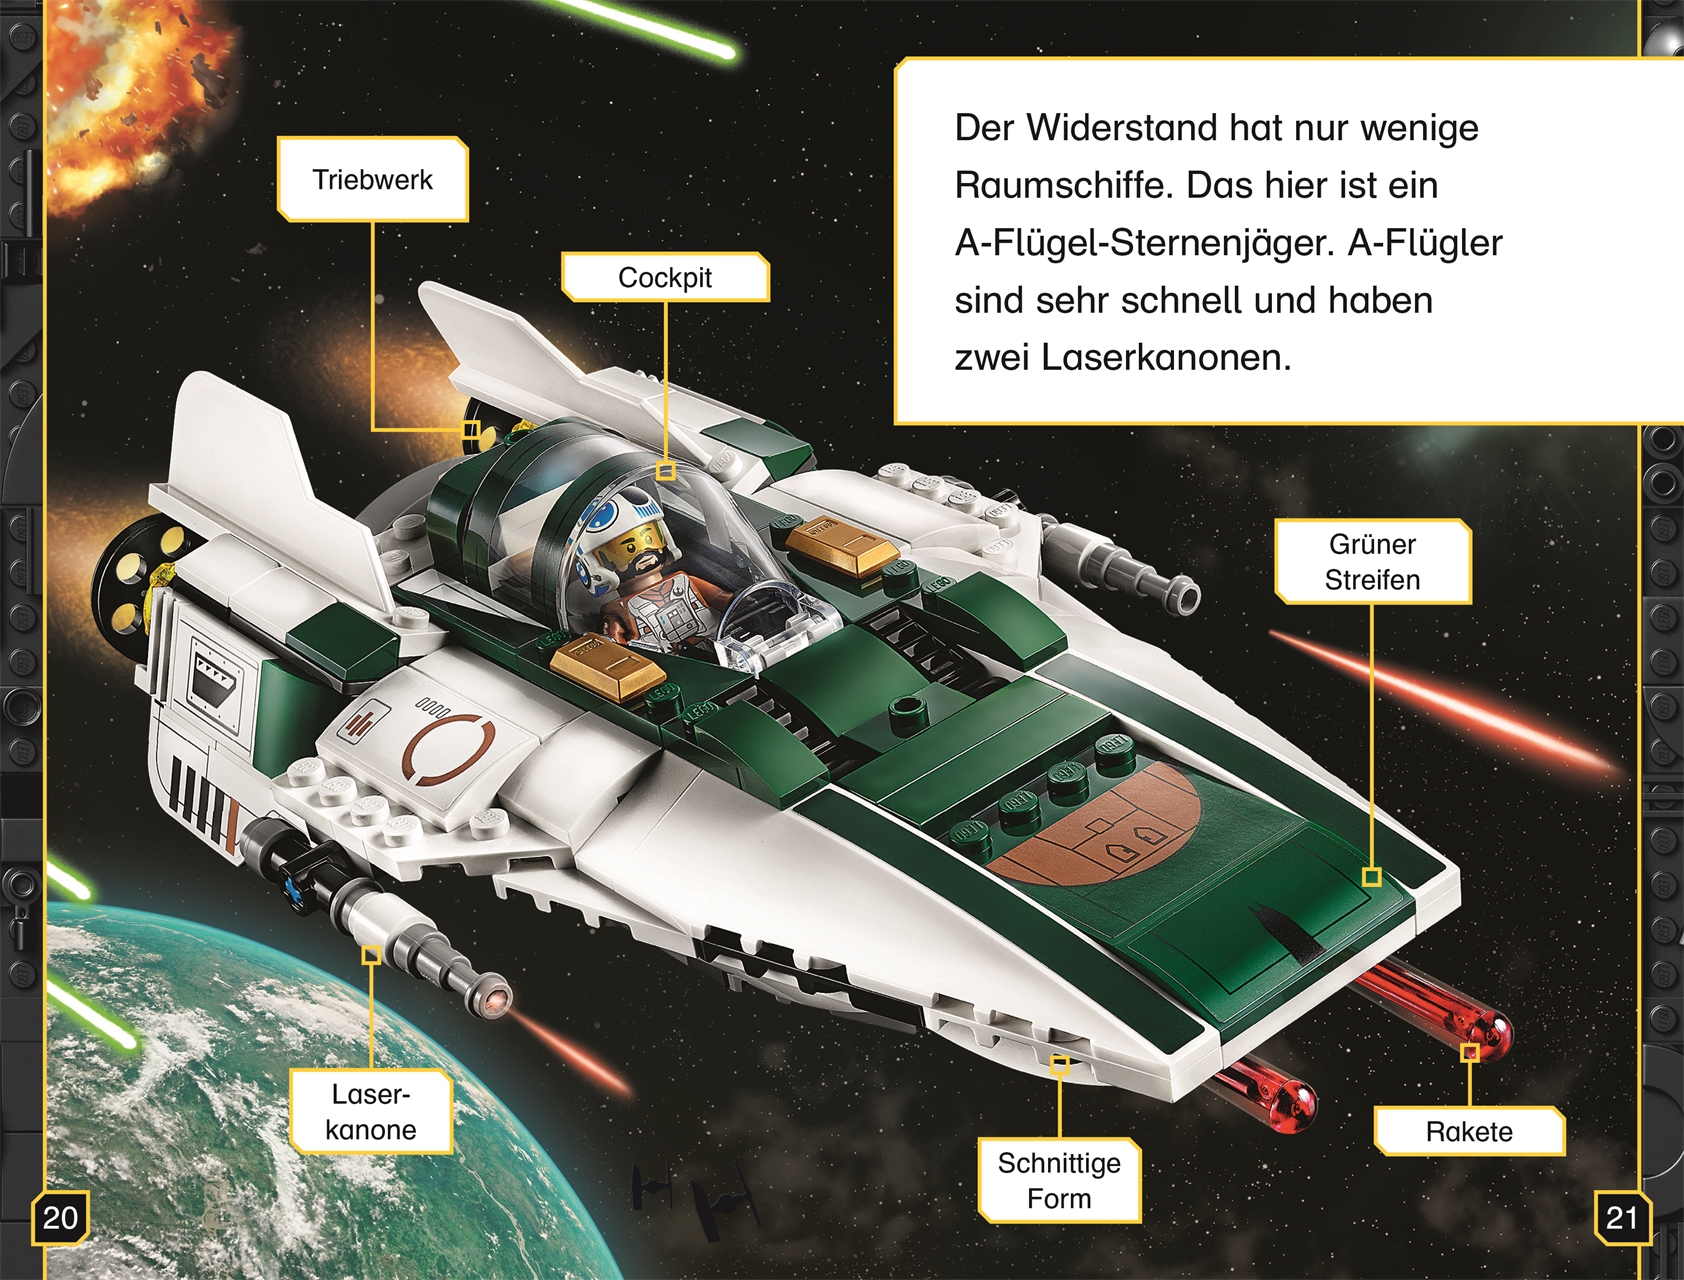 SUPERLESER! LEGO® Star Wars™ Der Aufstieg Skywalkers